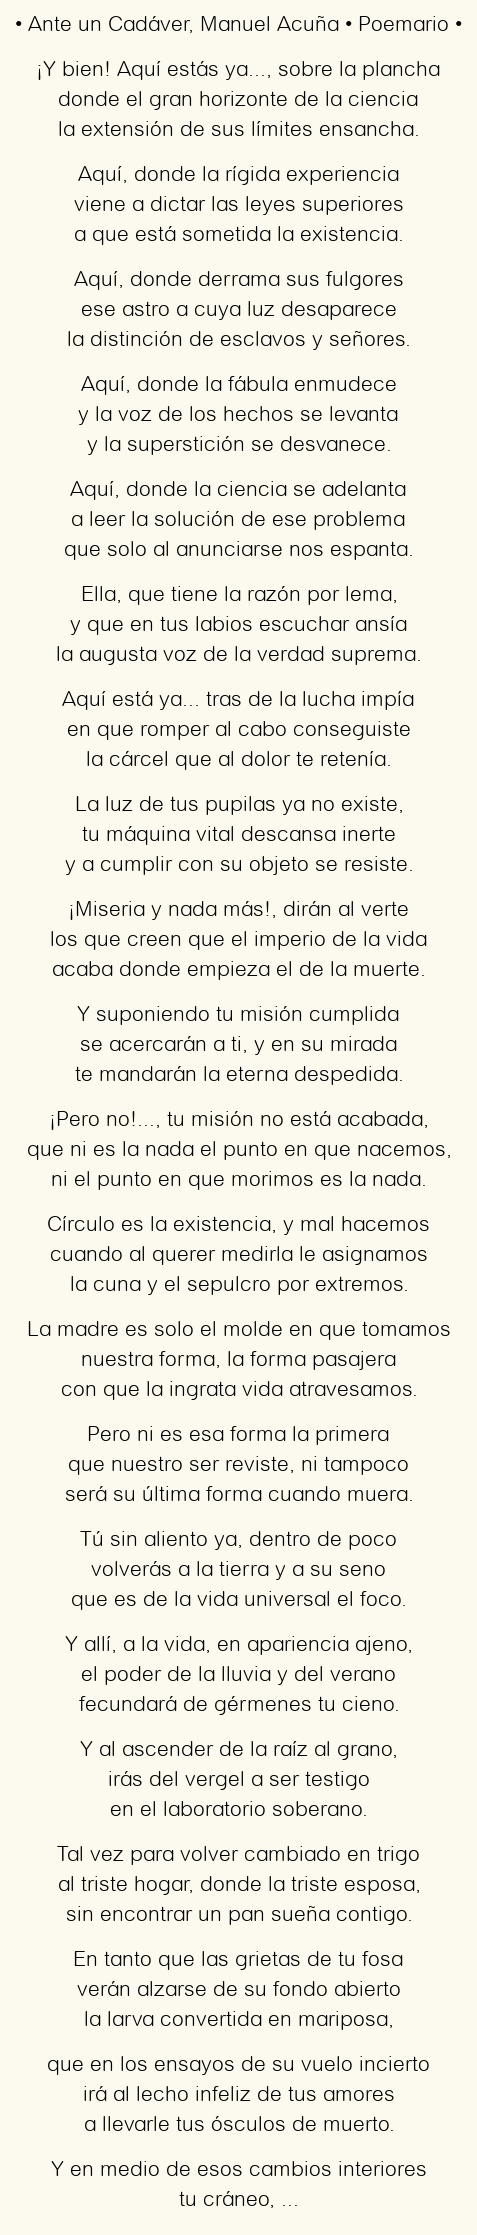 Imagen con el poema Ante un Cadáver, por Manuel Acuña